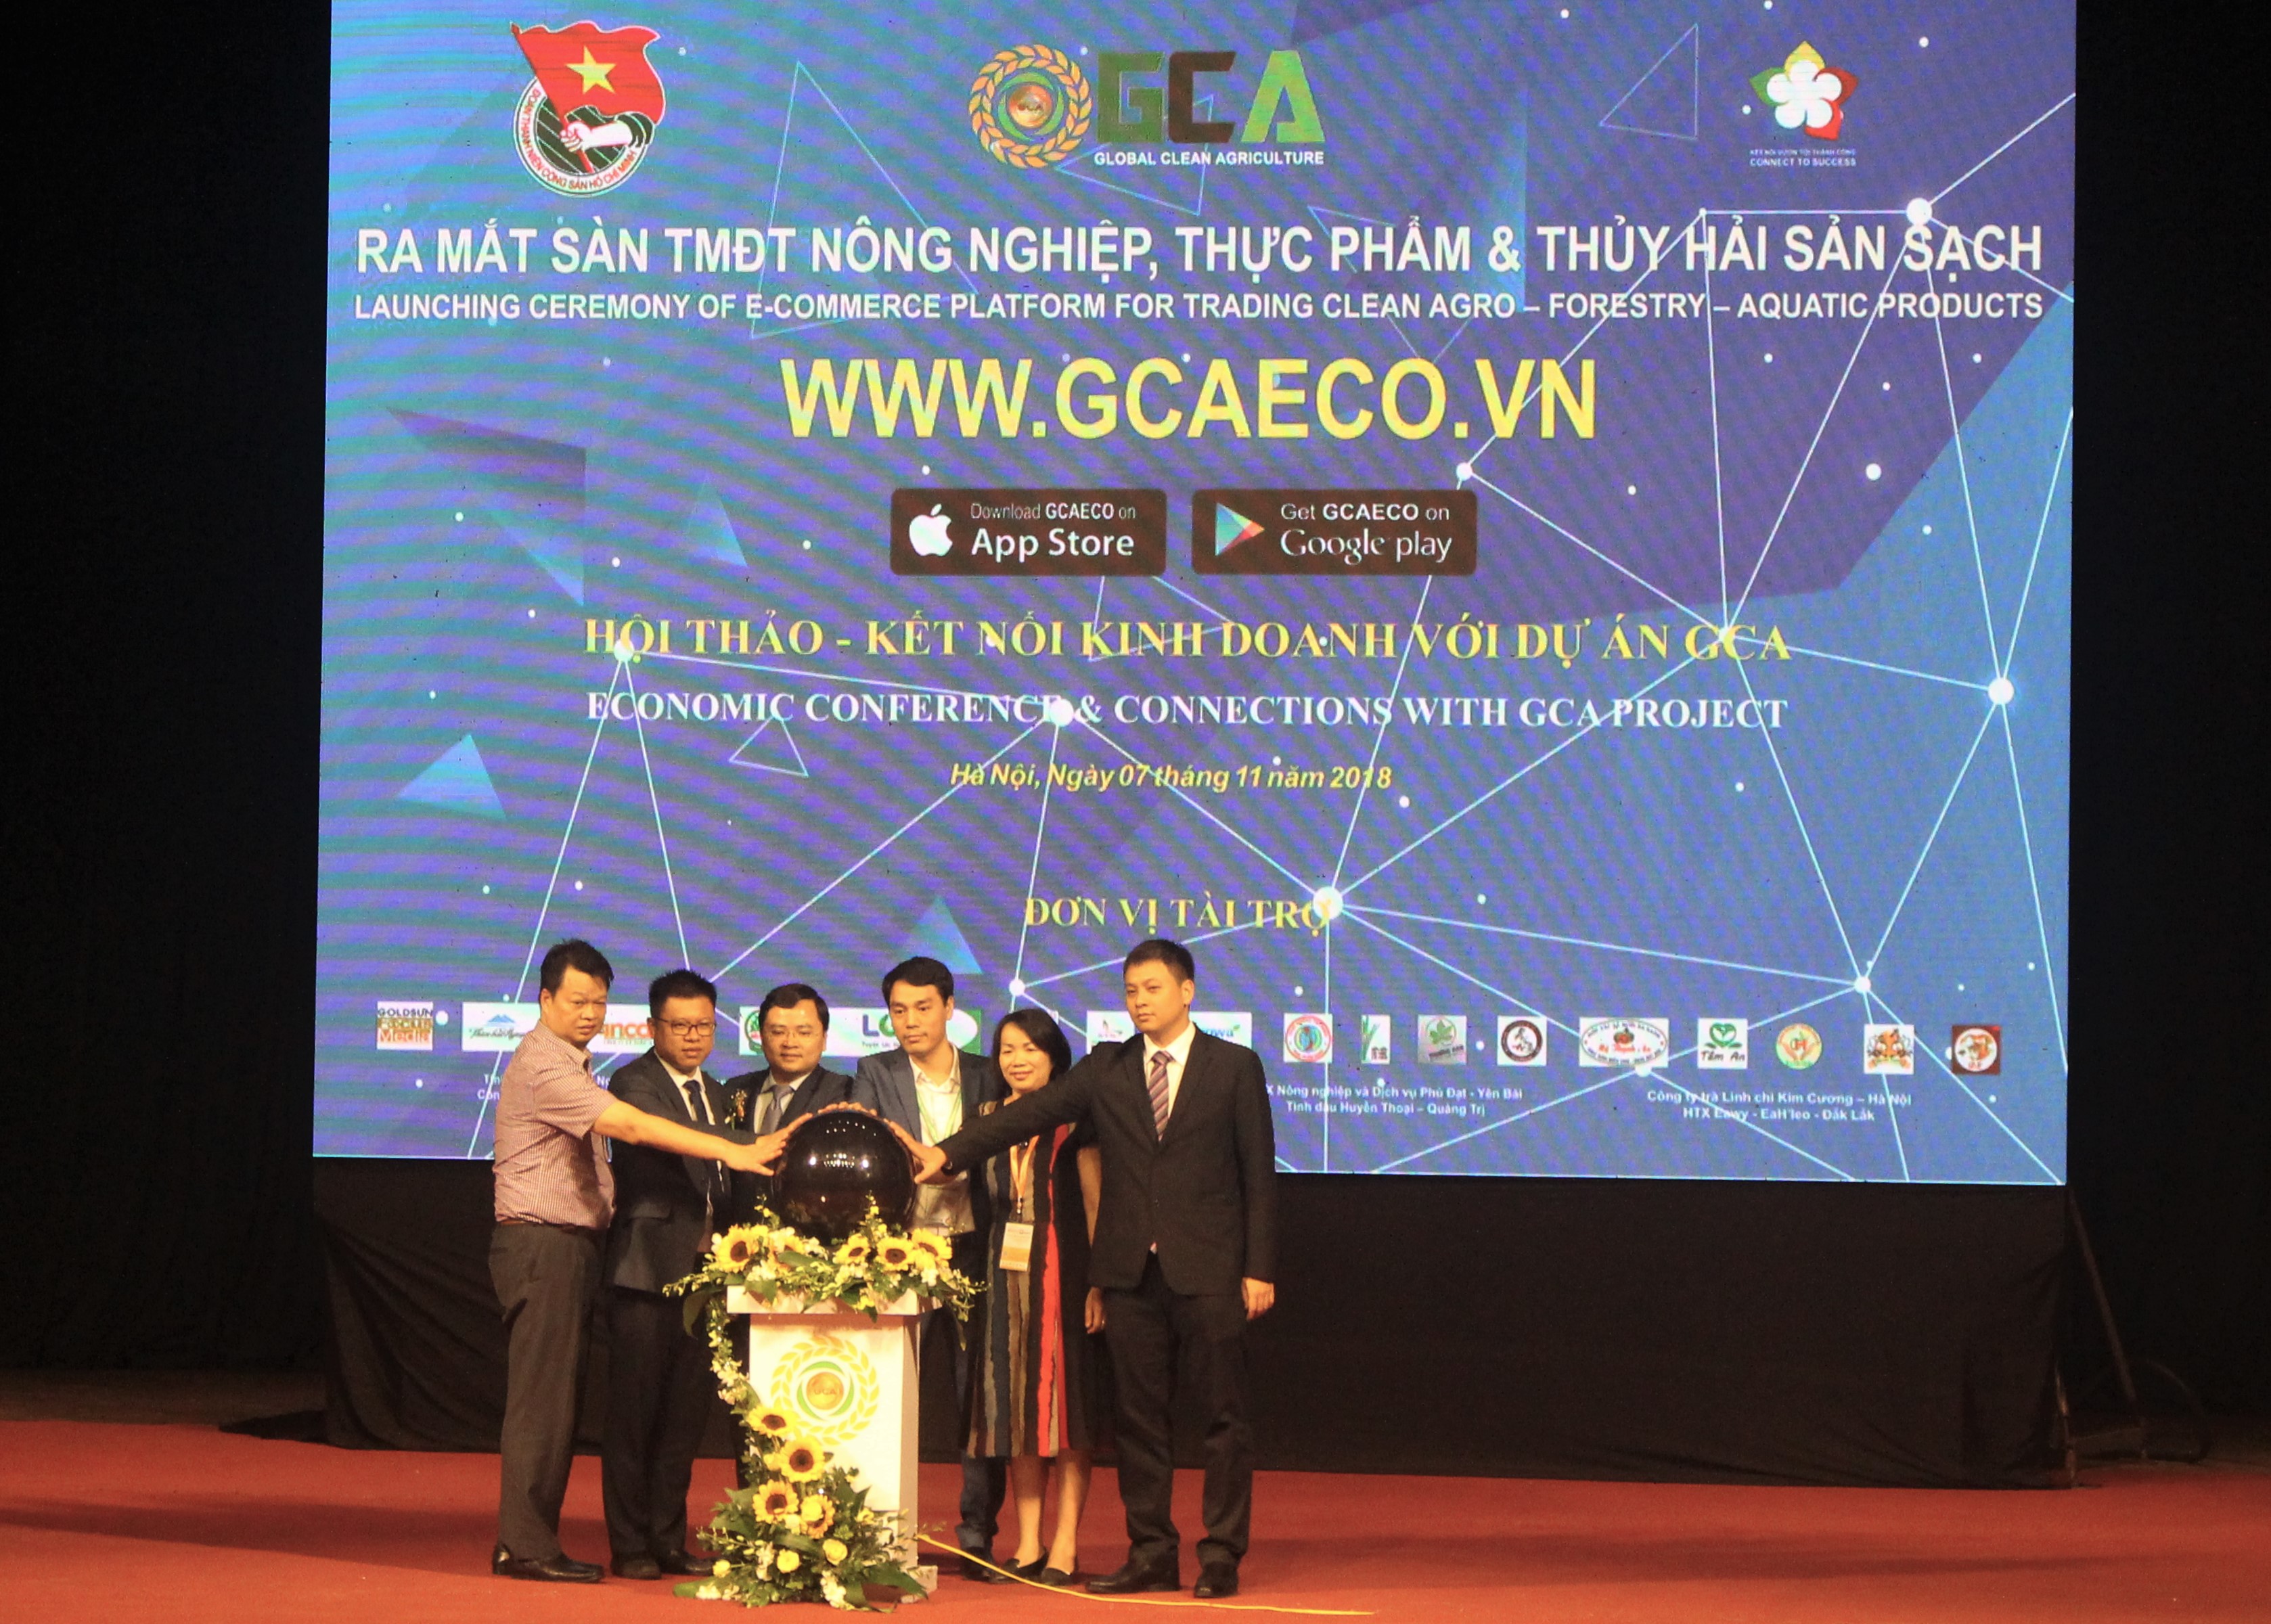 Ra mắt chợ online uy tín cho nông sản Việt